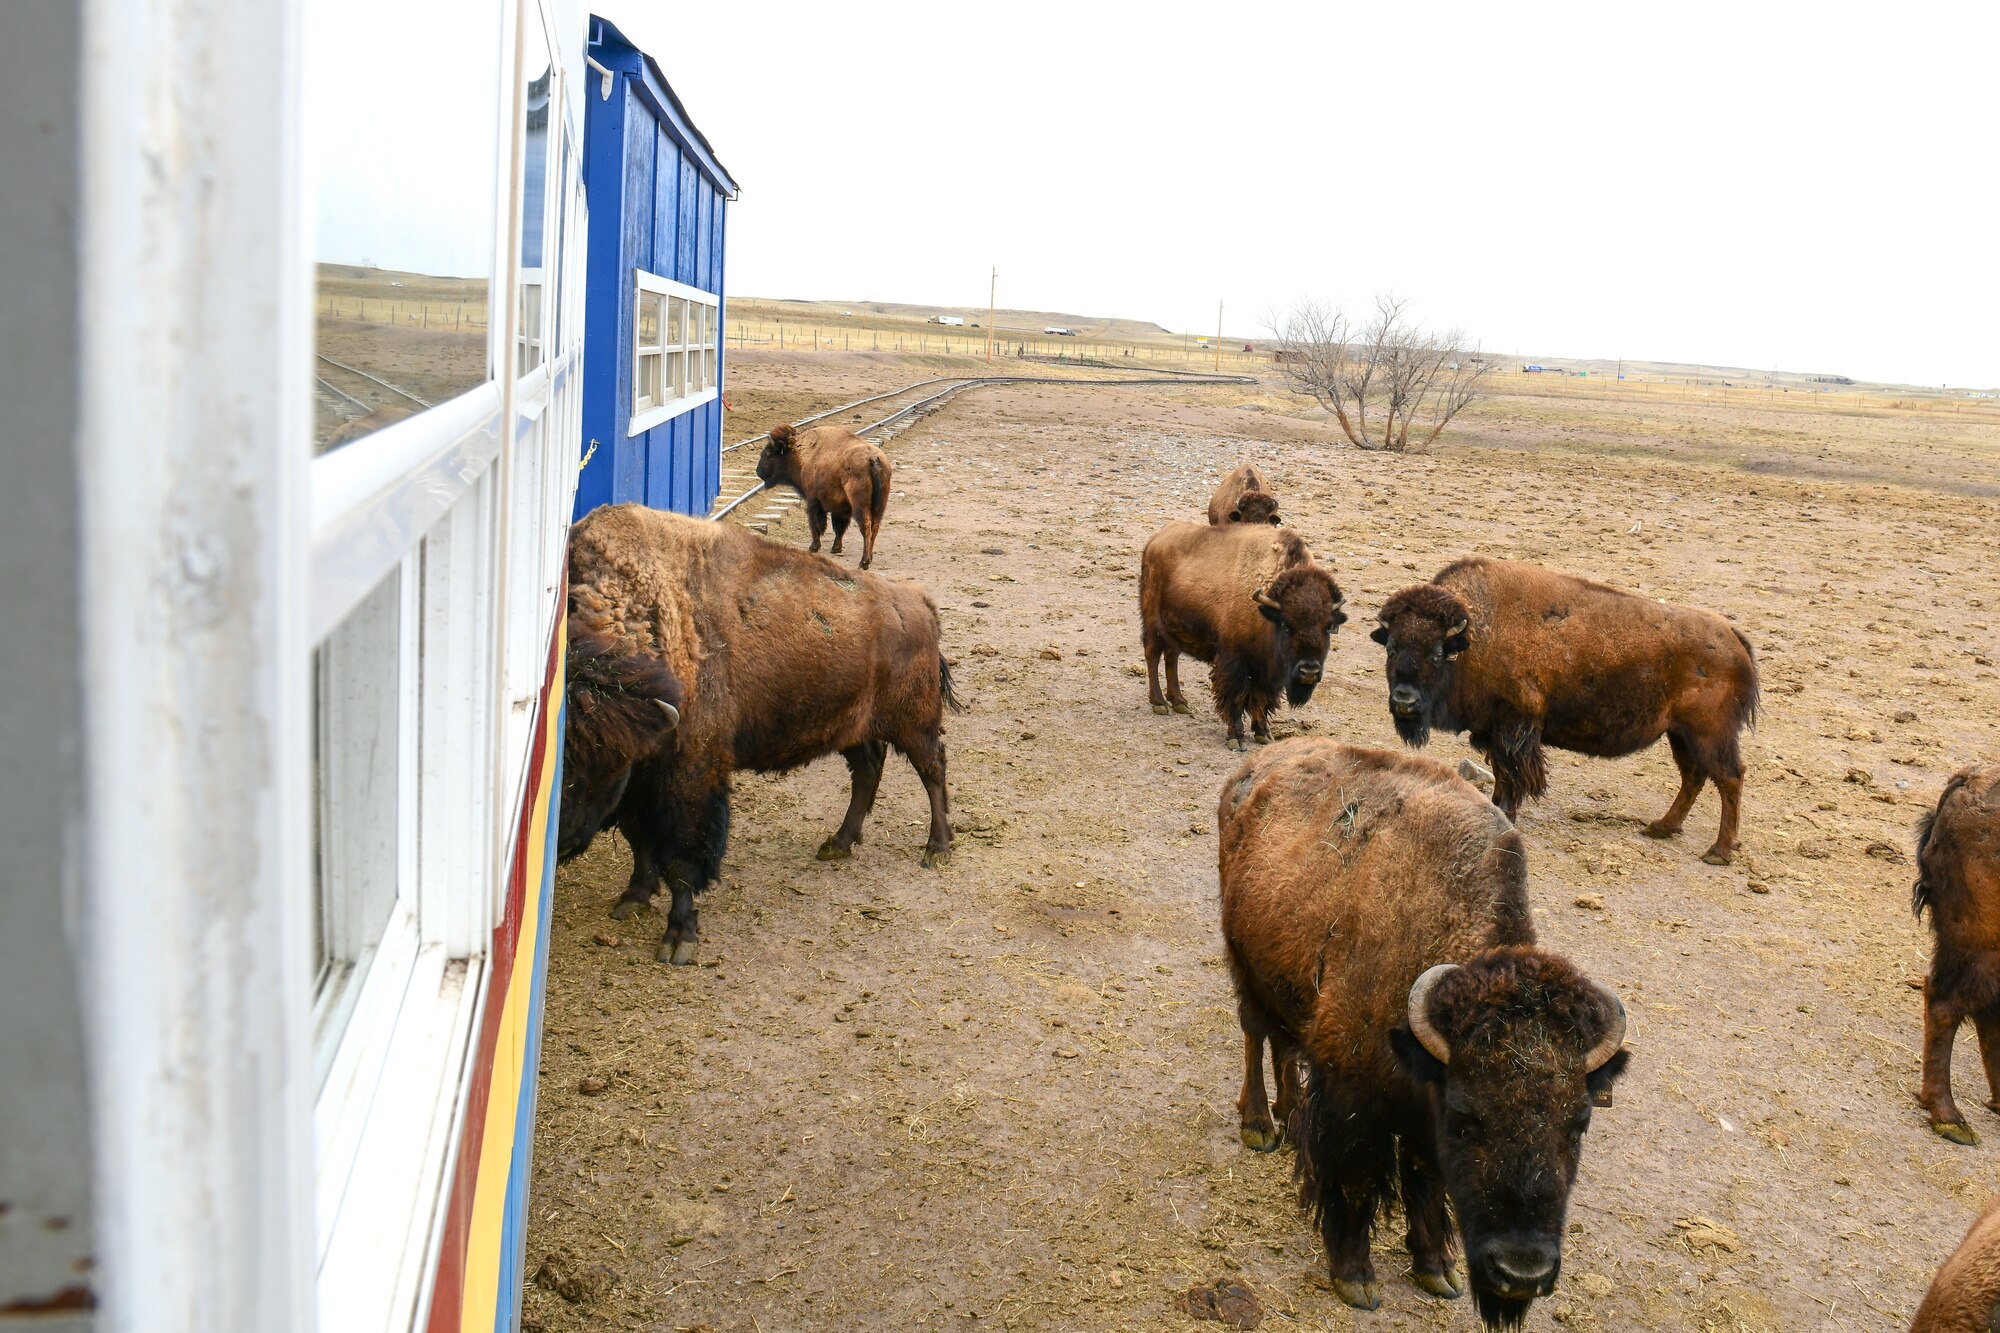 bison surround a train